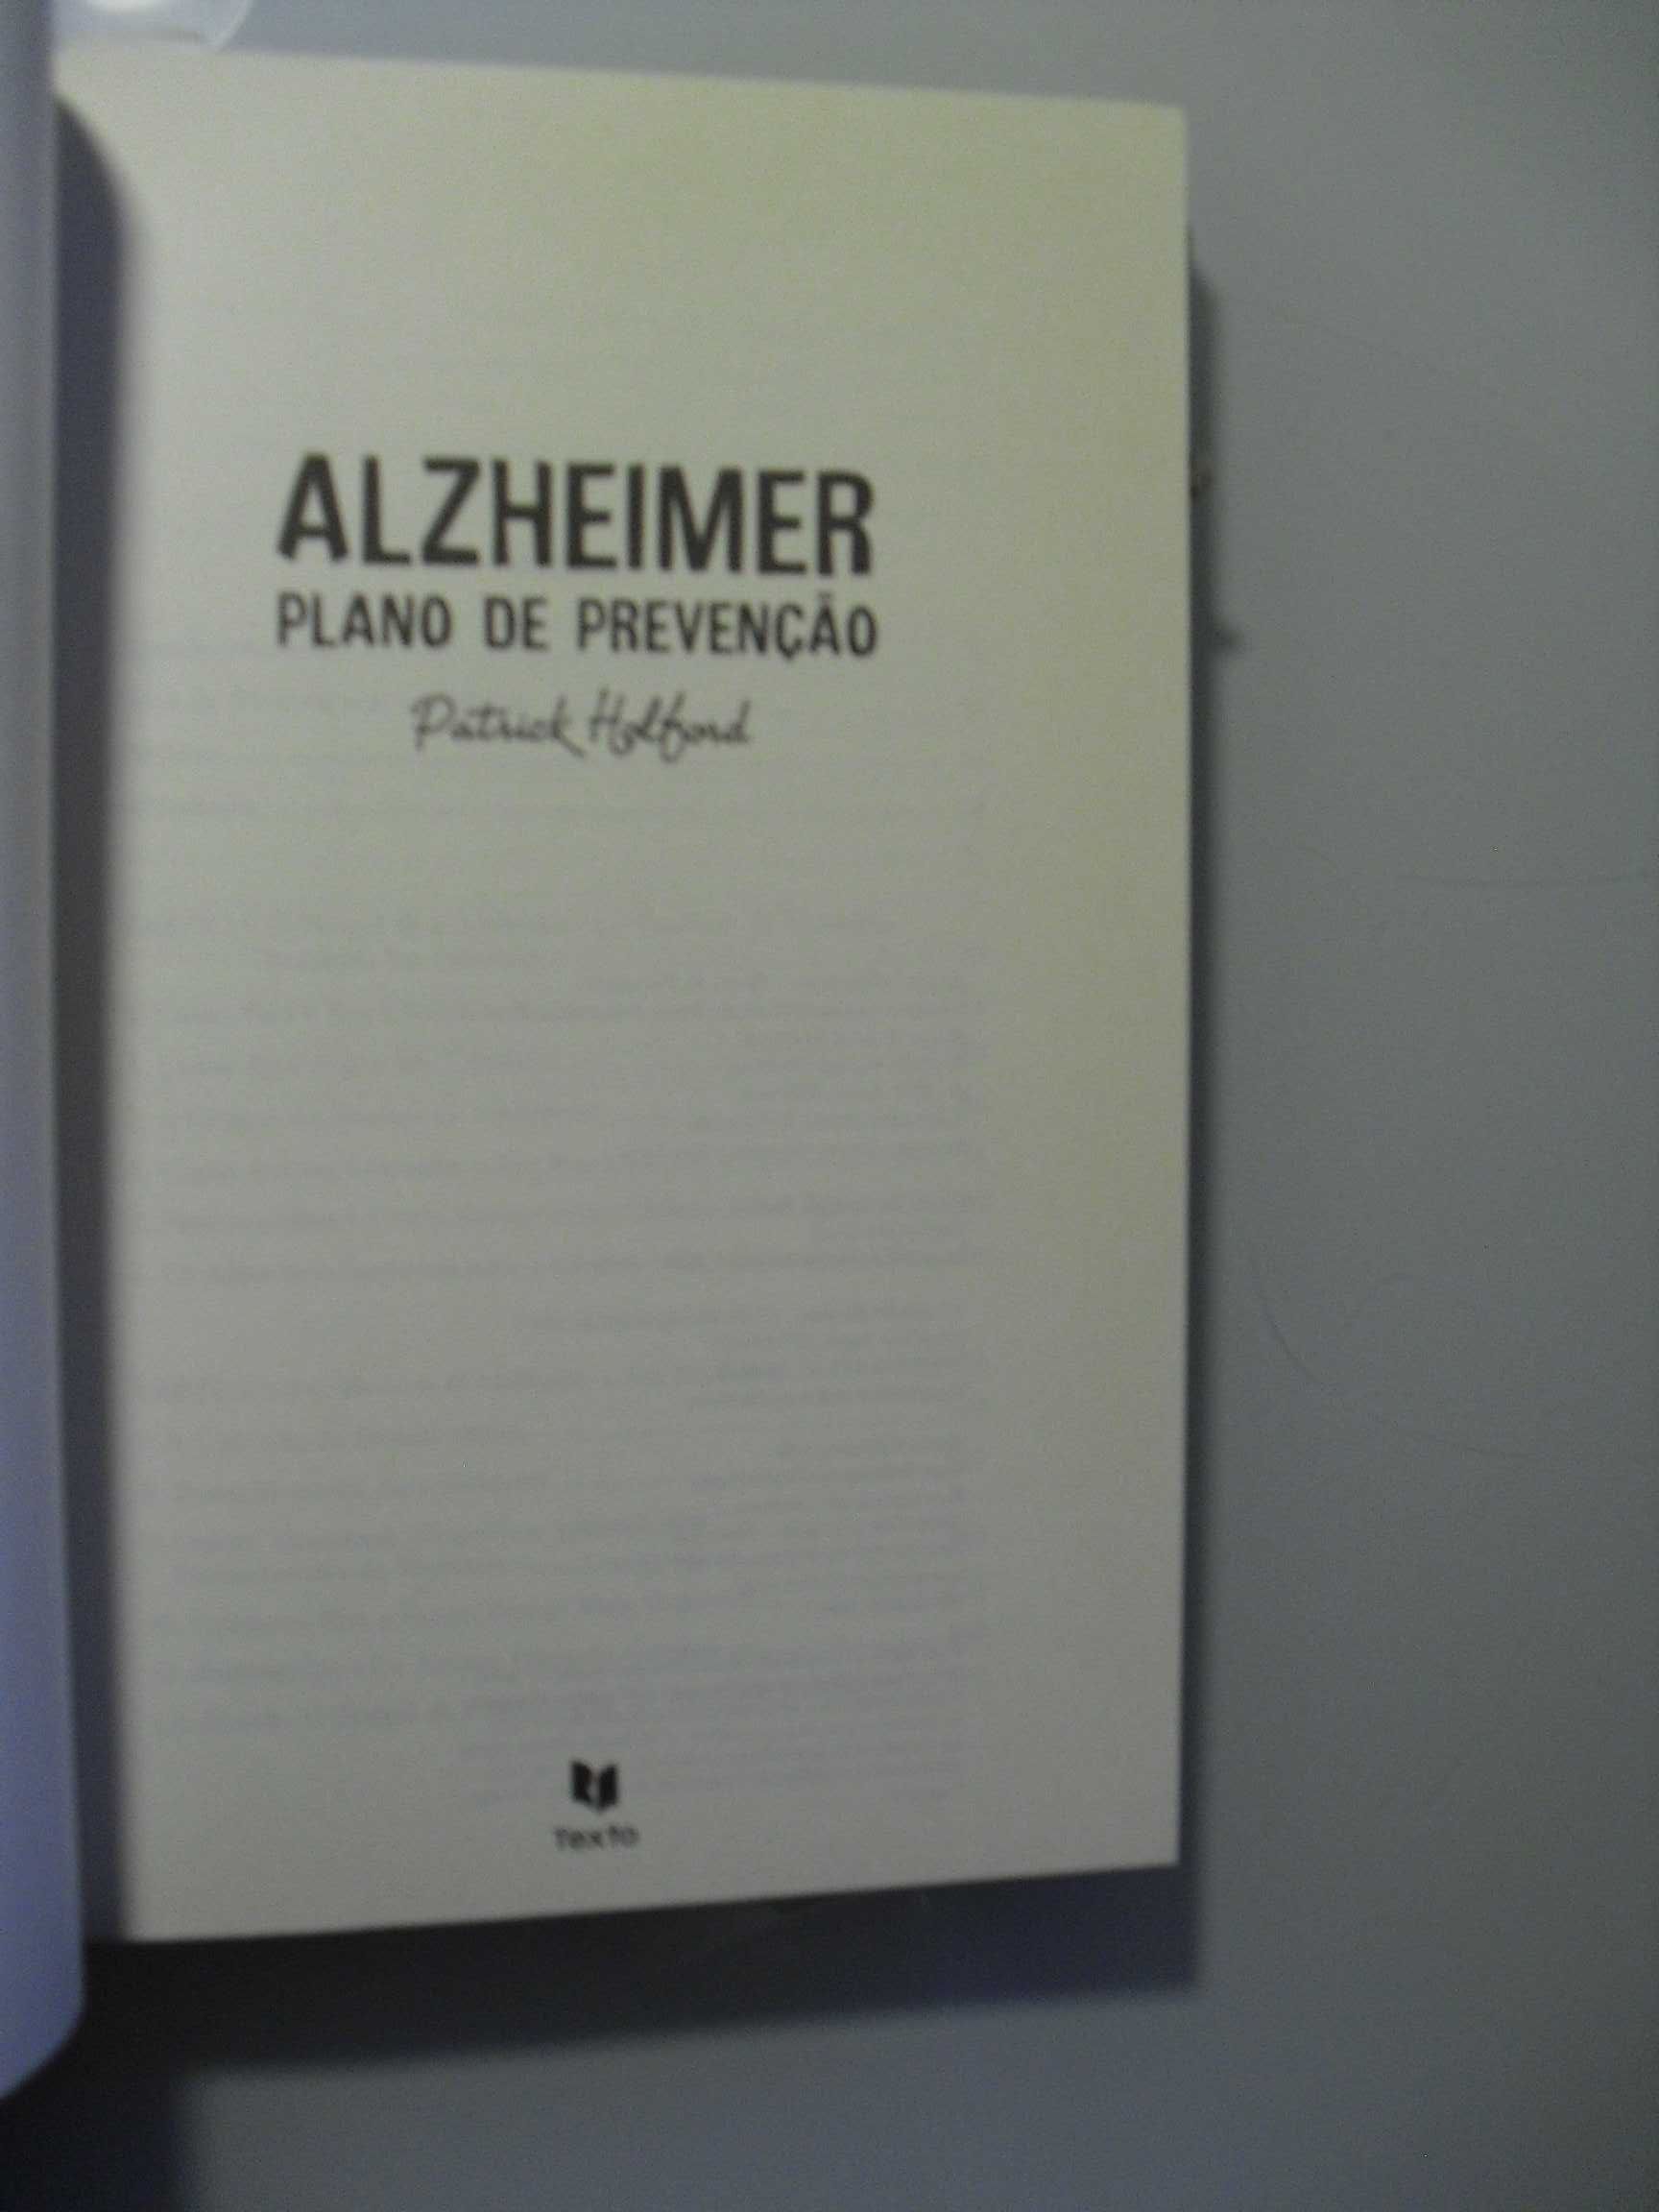 Holford (Patrick);Alzheimer-Plano de Prevenção